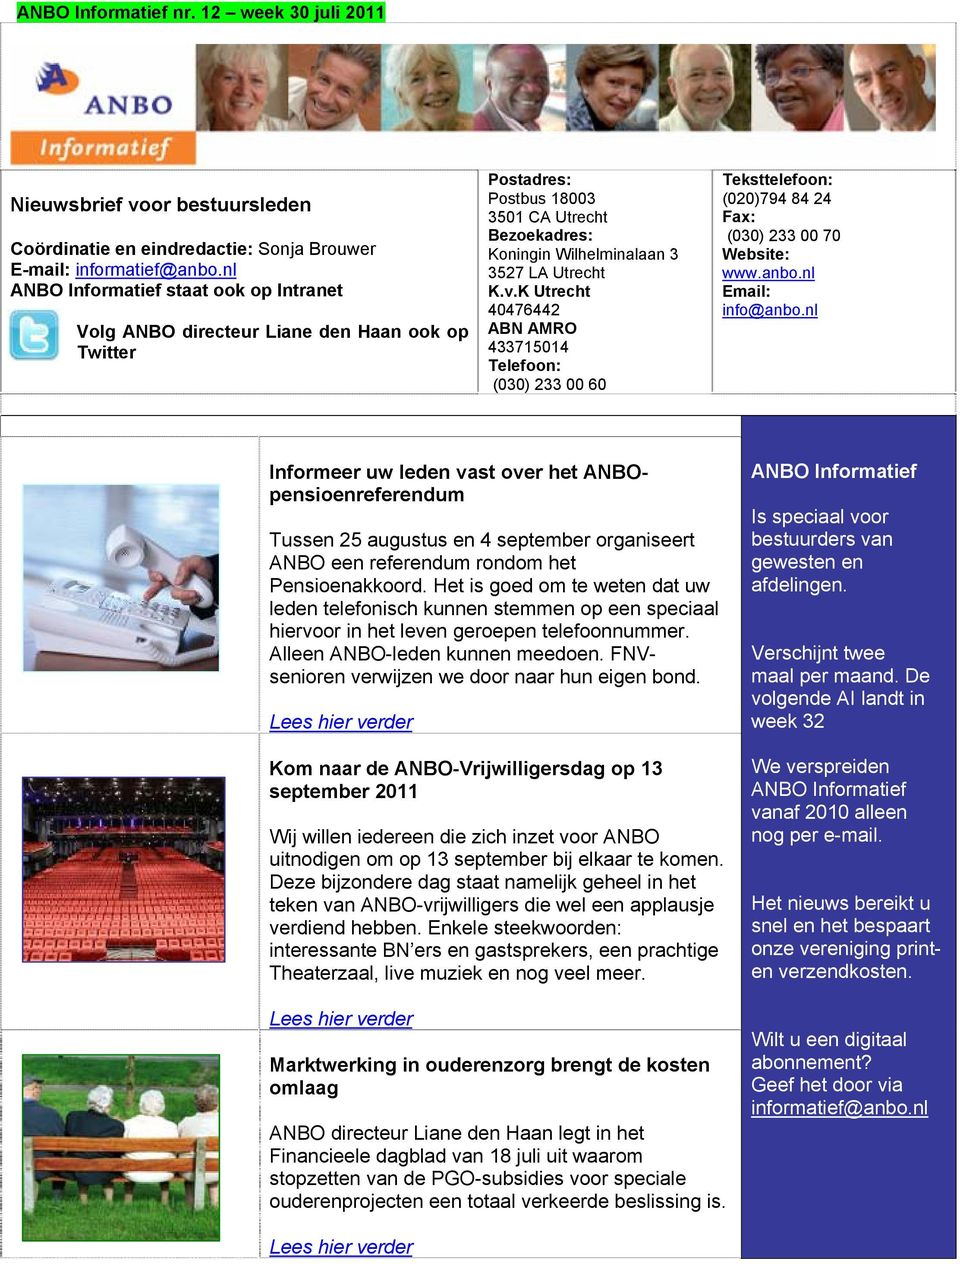 K Utrecht 40476442 ABN AMRO 433715014 Telefoon: (030) 233 00 60 Teksttelefoon: (020)794 84 24 Fax: (030) 233 00 70 Website: www.anbo.nl Email: info@anbo.